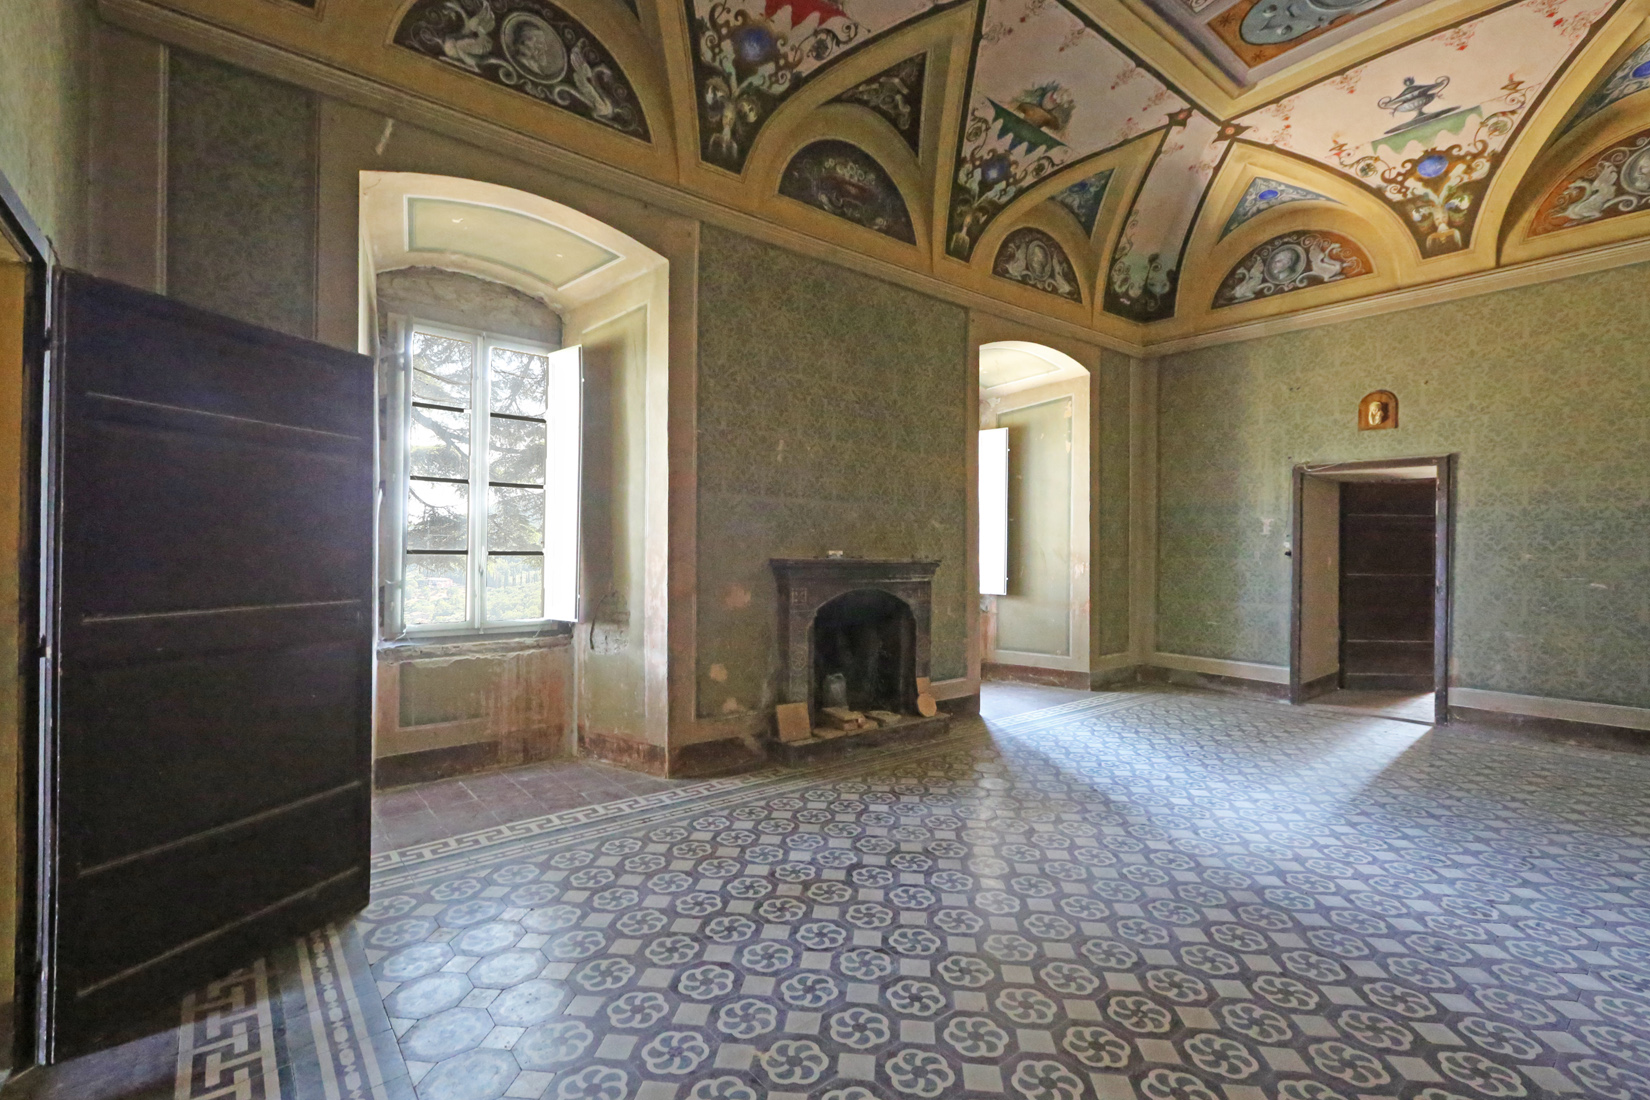 Il Castello Di Montesperello in Umbria: between history and modernity